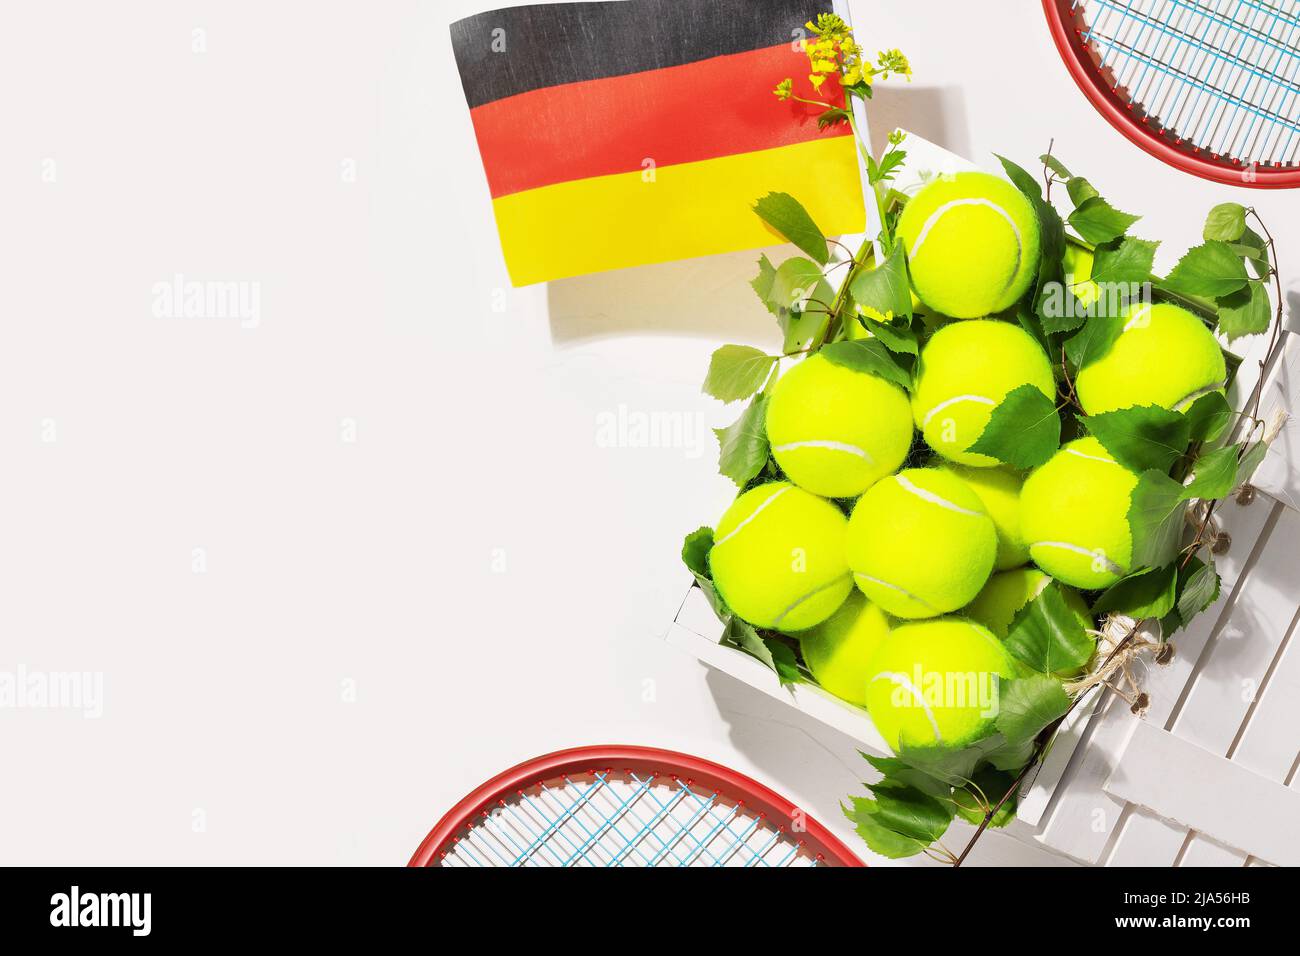 Balles de tennis dans une boîte en bois et le drapeau de l'Allemagne Banque D'Images